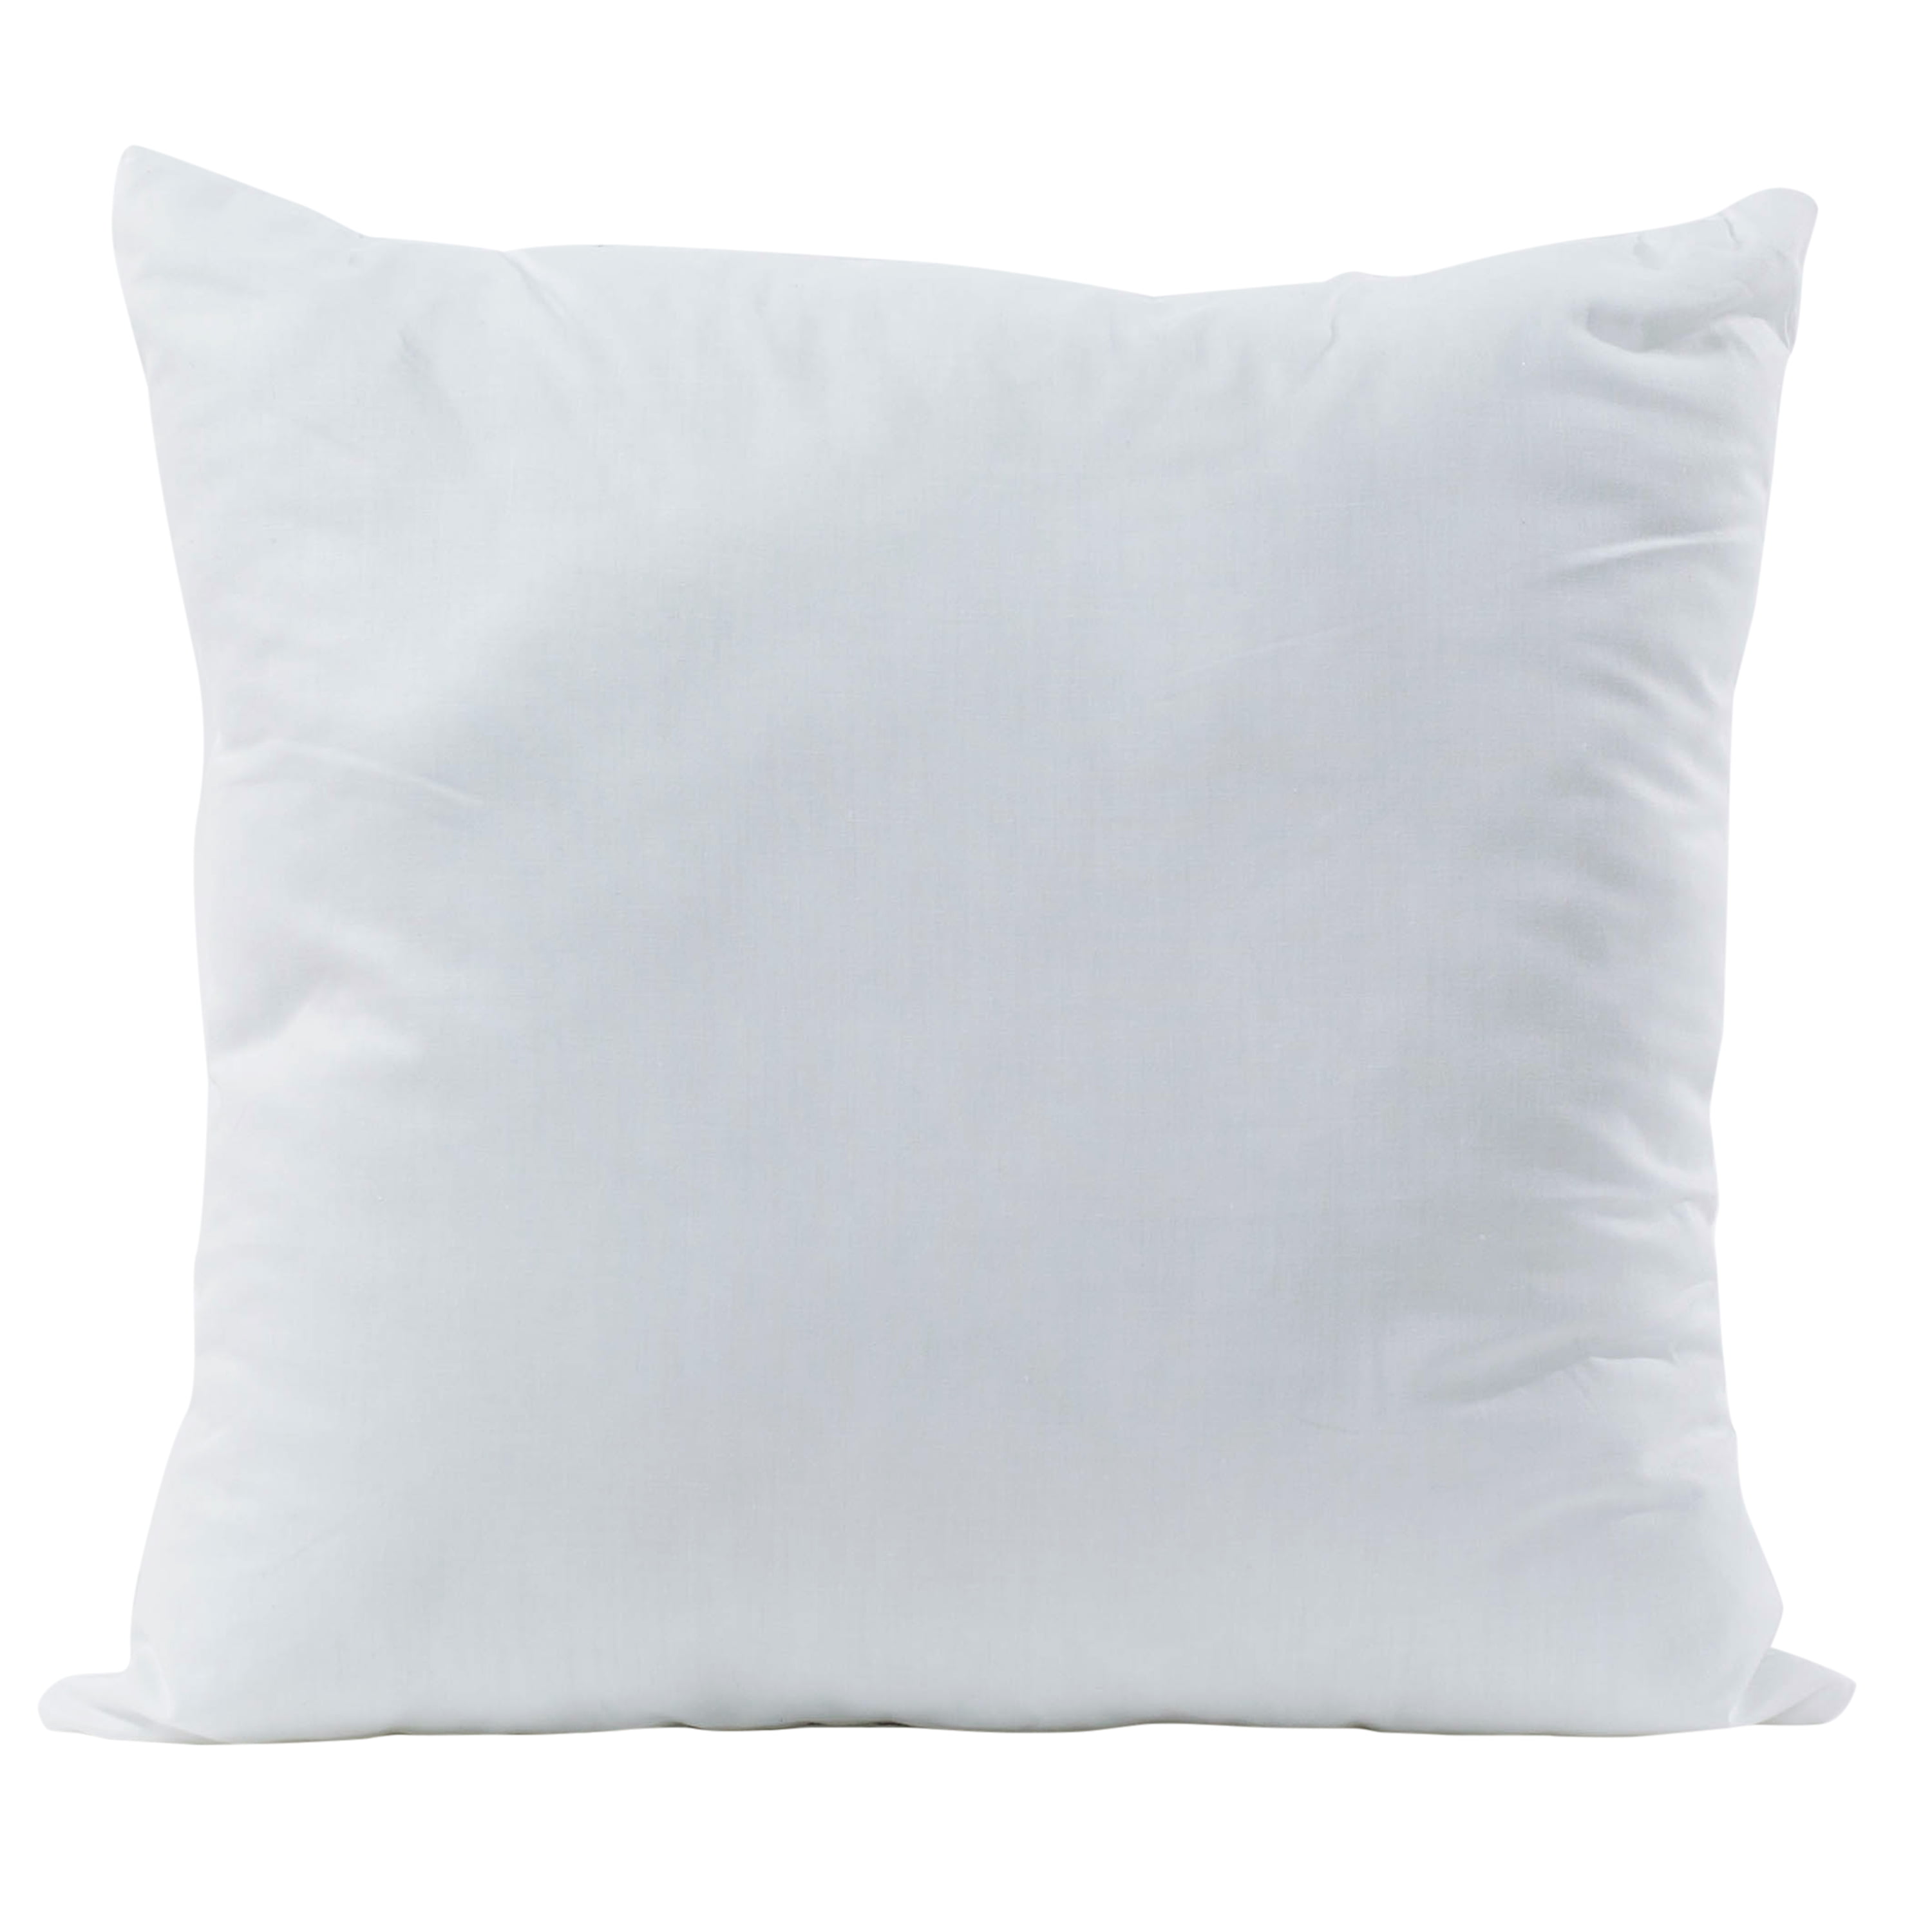 Poly-Fil A-JP222 Premier 22 Square Pillows-Set of 2 White 22 x 22 